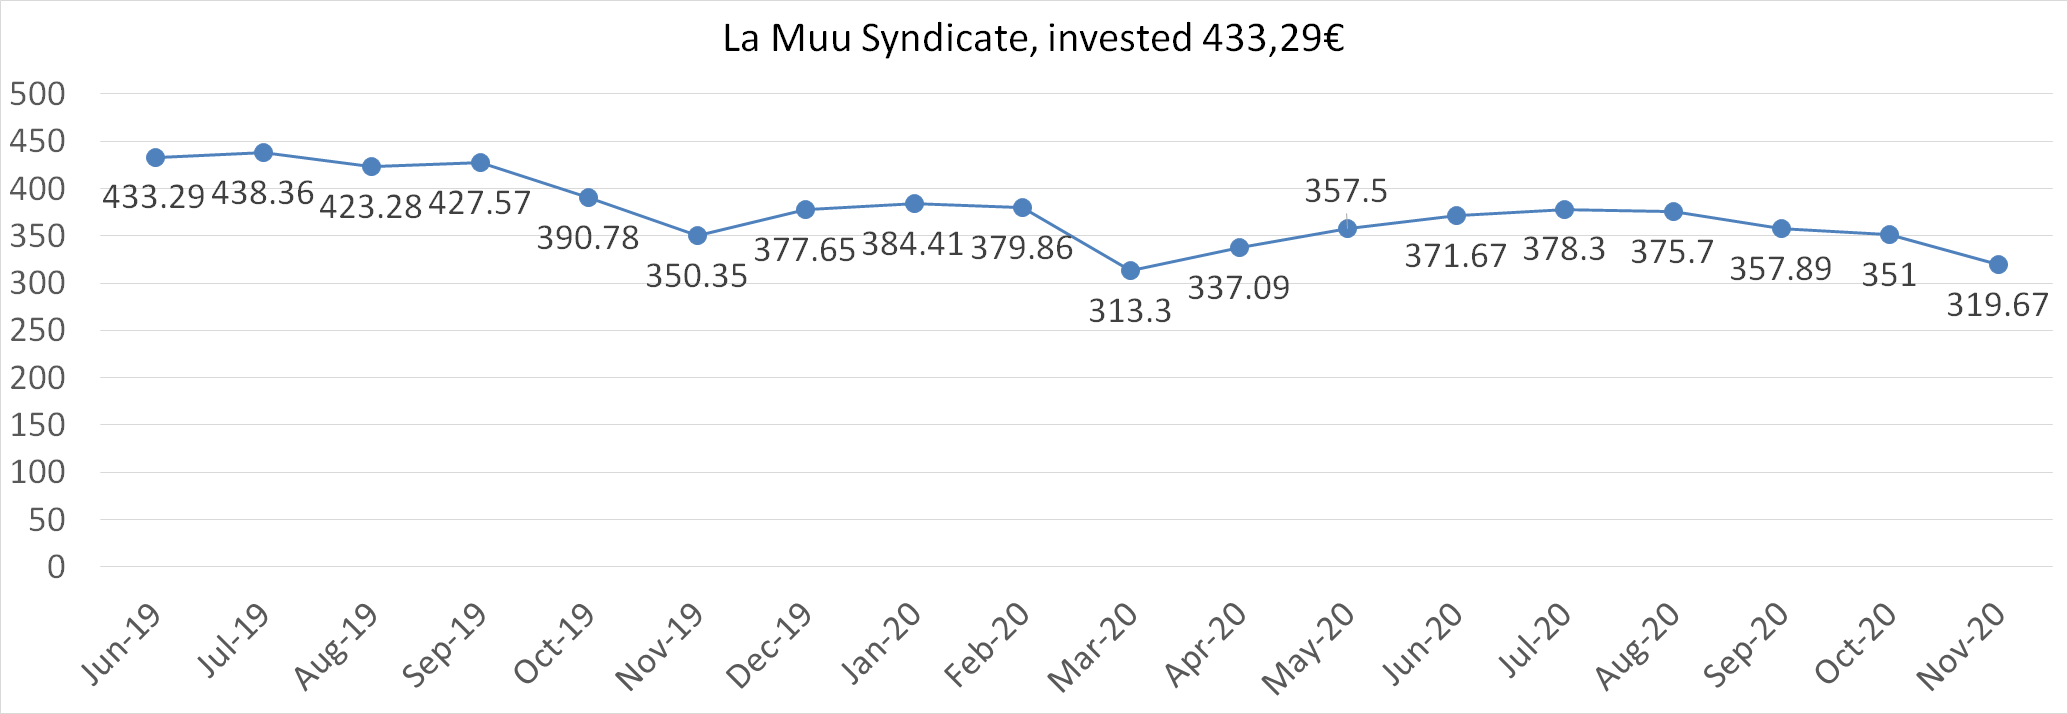 La Muu syndicate worth November 2020